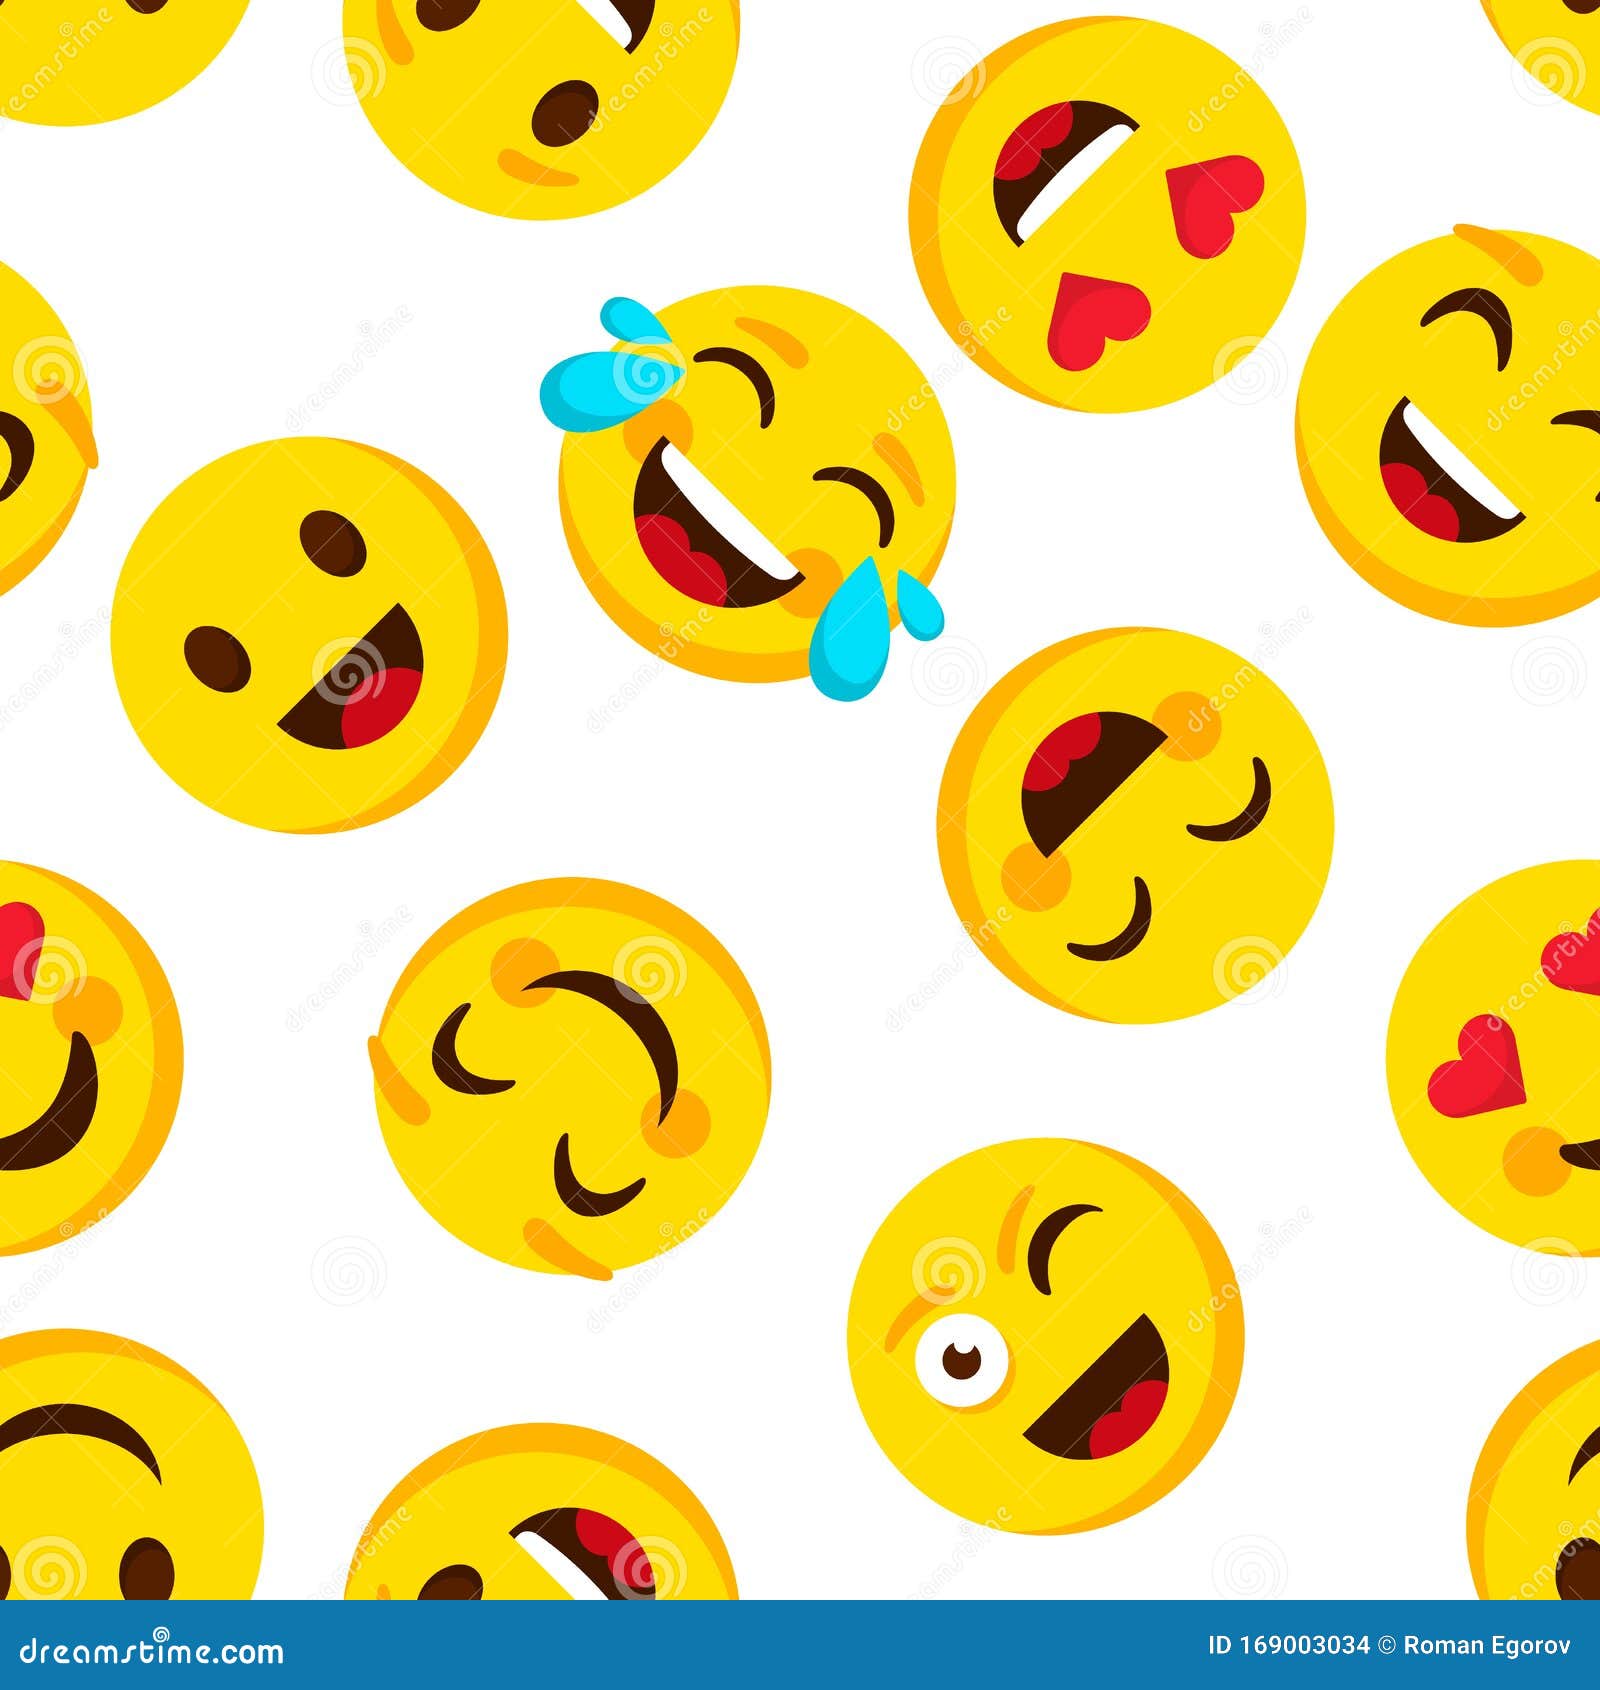 Các mẫu hoa văn emoji dễ thương đang làm mưa làm gió trên thế giới. Hãy dành vài phút để khám phá những hình ảnh đầy sáng tạo và bắt mắt này. Những mẫu hoa văn tuyệt đẹp được thiết kế bằng các biểu tượng cười đáng yêu sẽ đem lại cho bạn trải nghiệm tuyệt vời khi xem chúng.